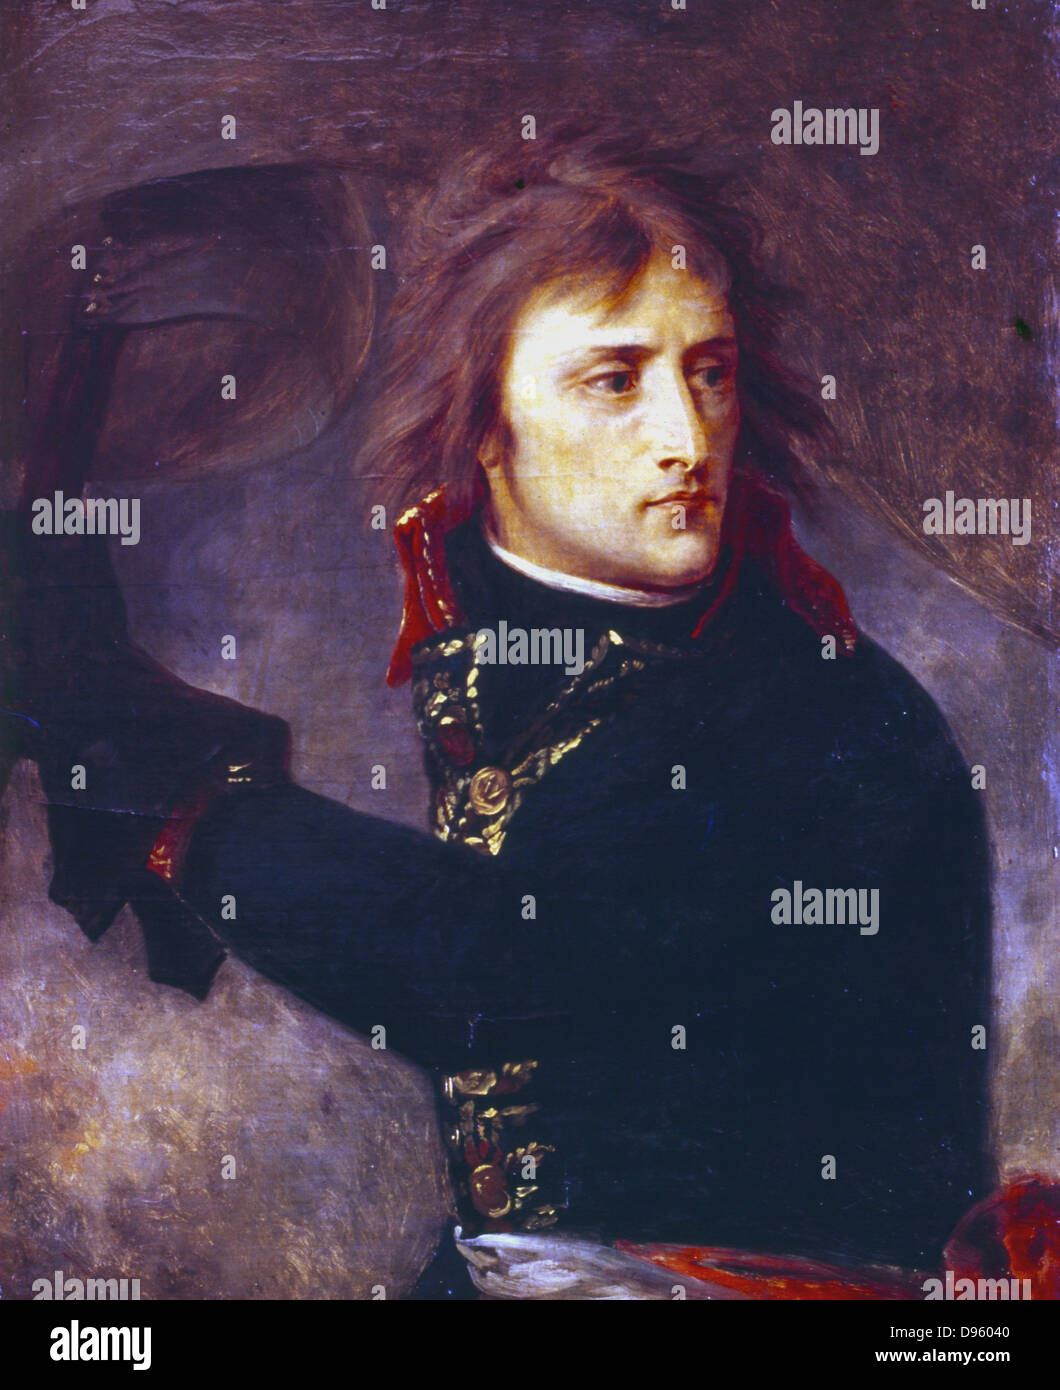 'Général Napoléon Bonaparte (1769-1821) à Arcole' 1796. Napoléon Ier (1769-1821). (Antoine) Jean GROS (1771-1835) peintre français. Huile sur toile. Louvre, Paris Banque D'Images